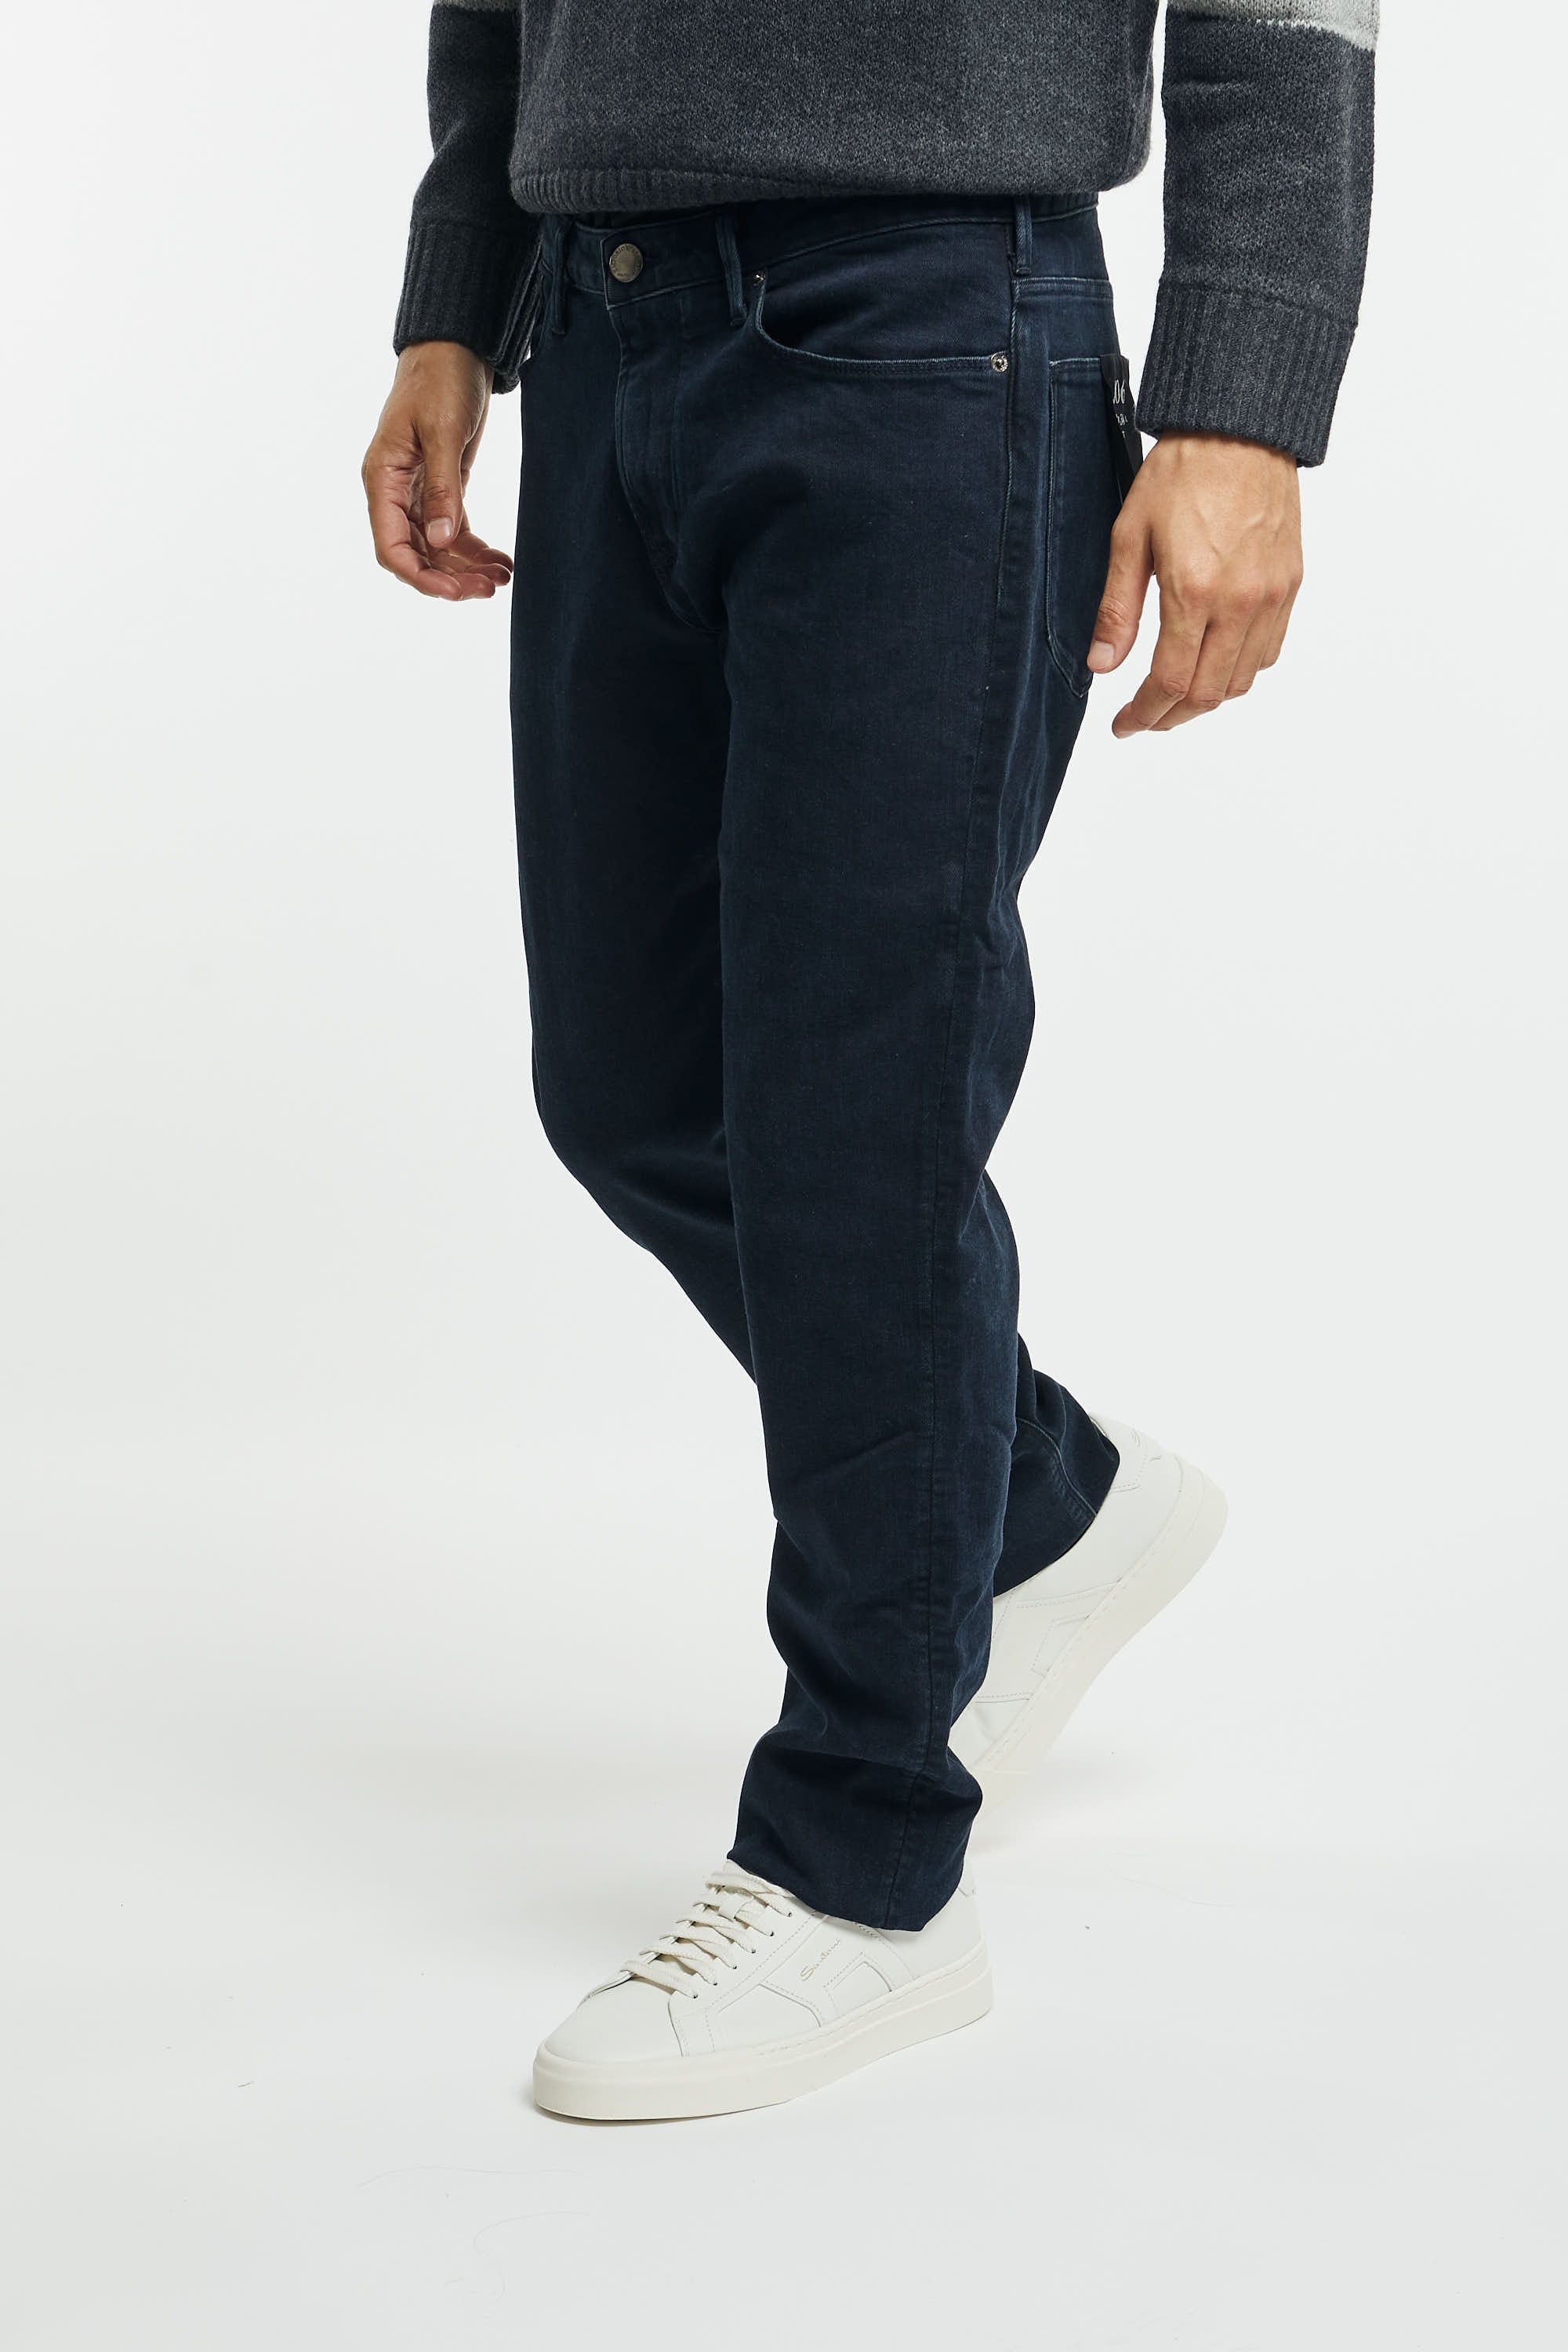 Jeans J06 slim fit in twill comfort denim-1